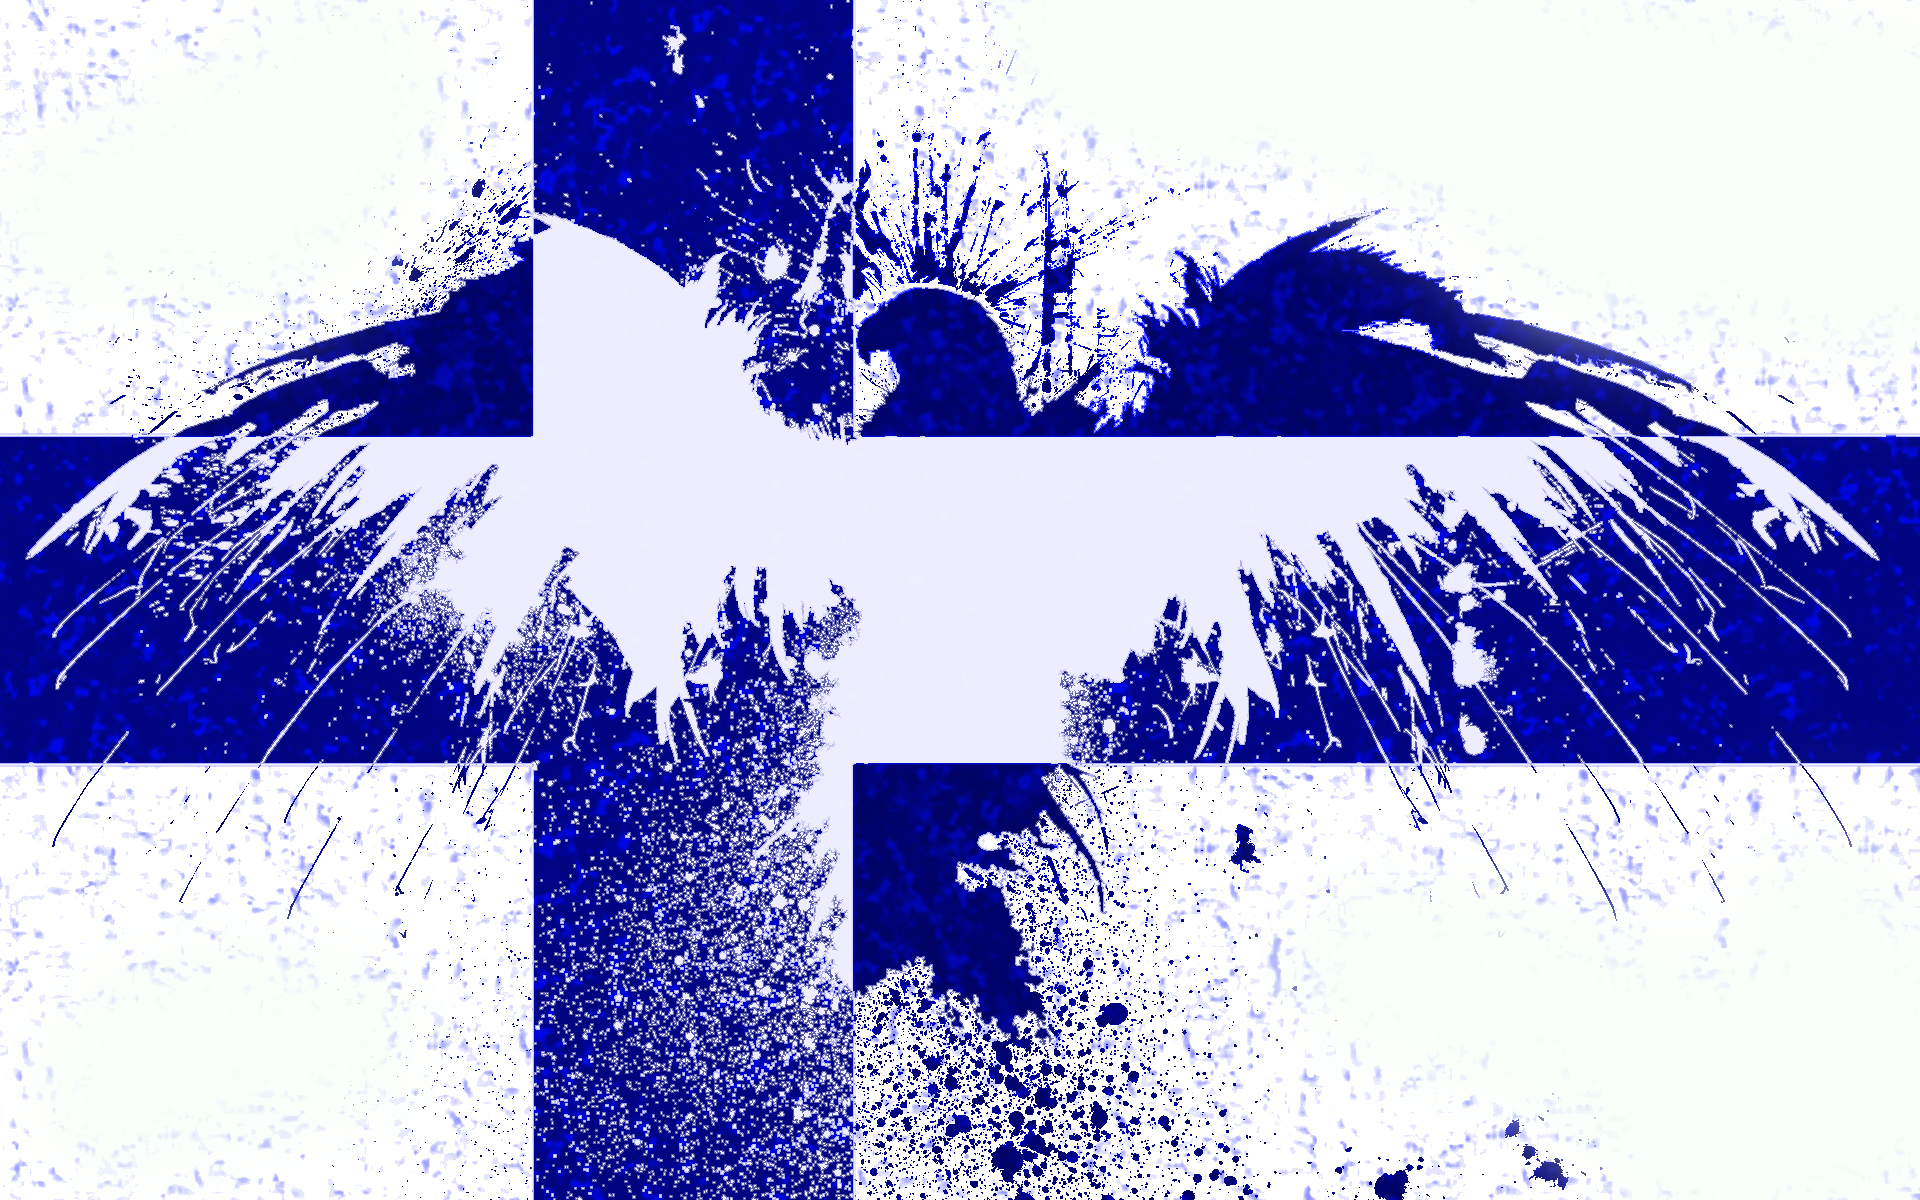 Символы Финляндии